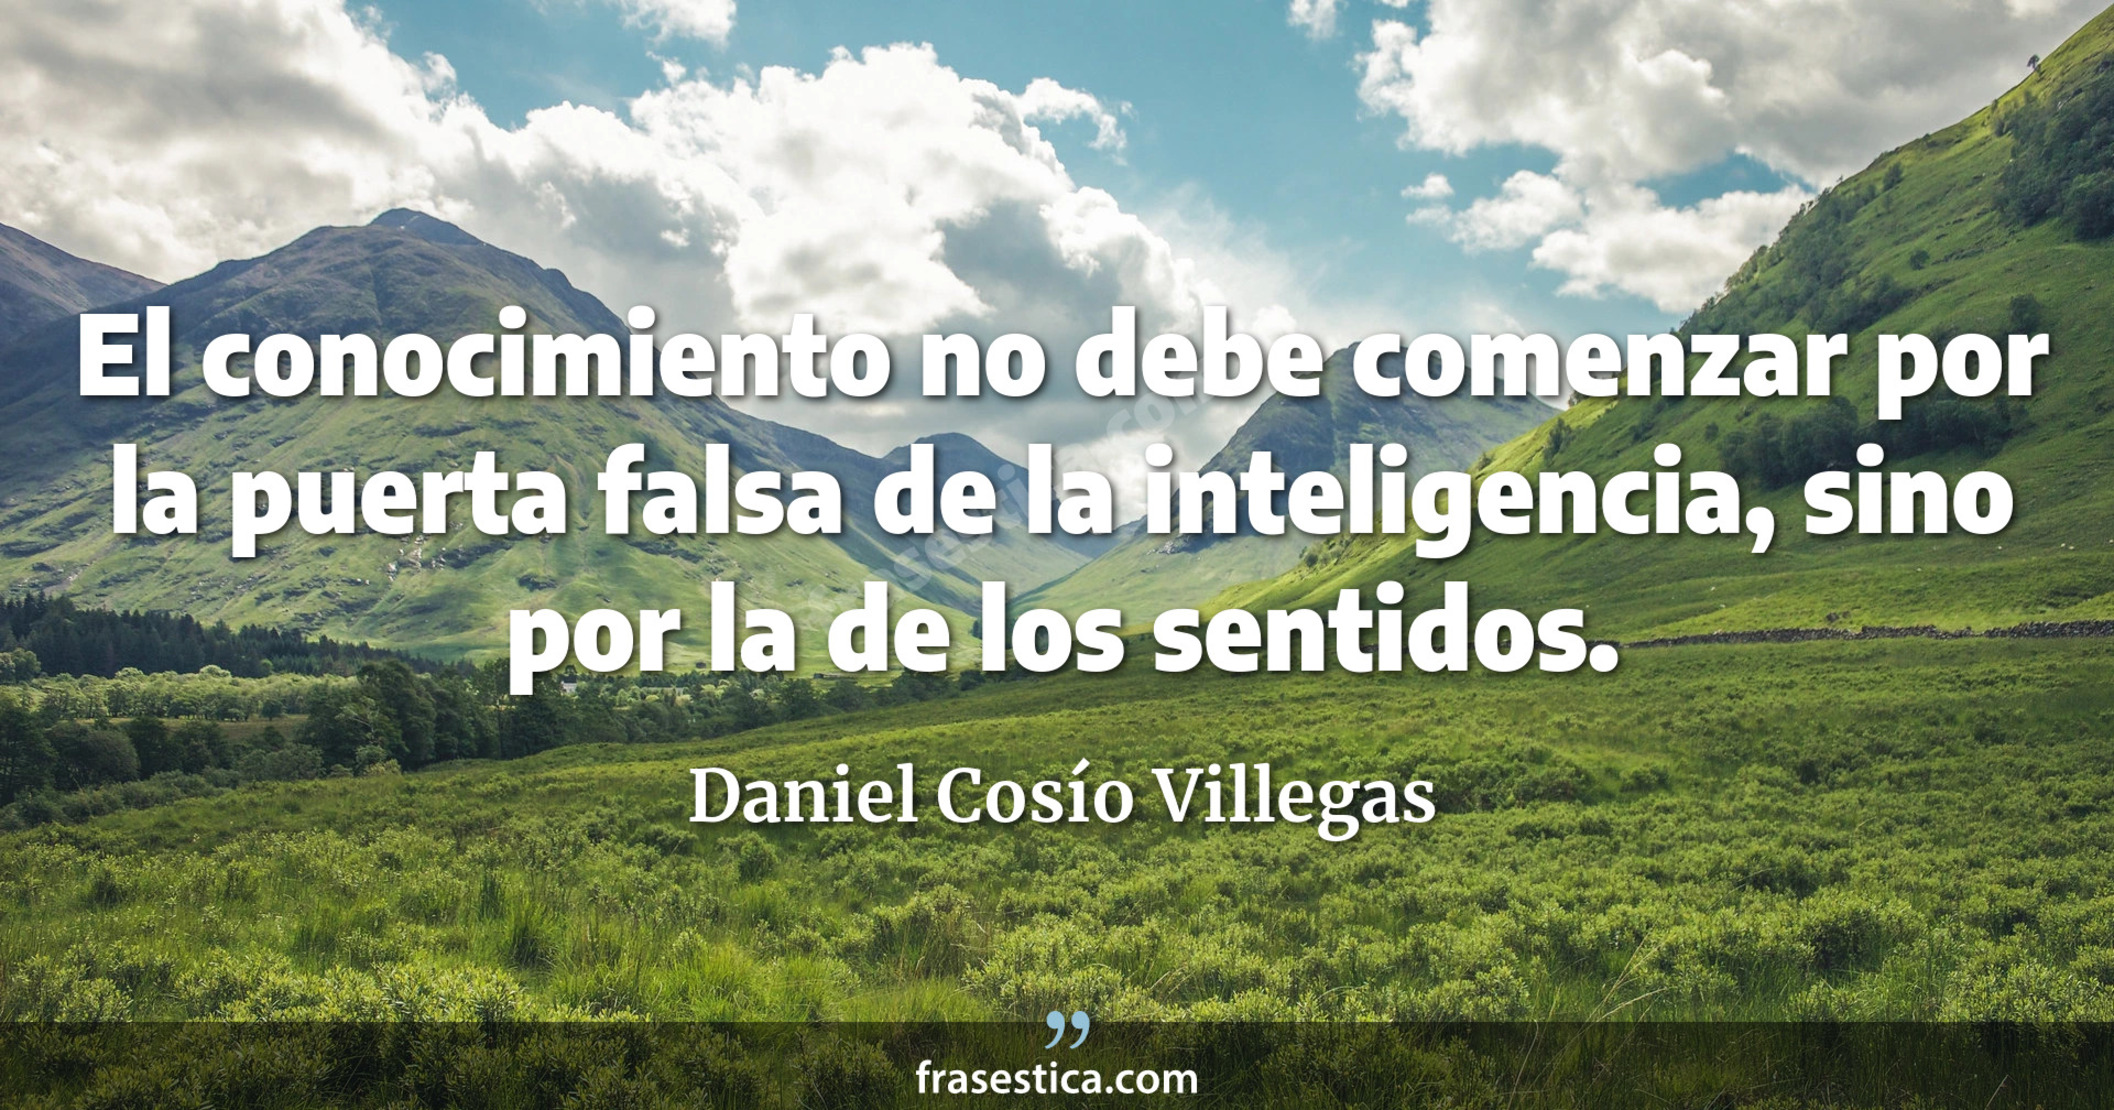 El conocimiento no debe comenzar por la puerta falsa de la inteligencia, sino por la de los sentidos. - Daniel Cosío Villegas